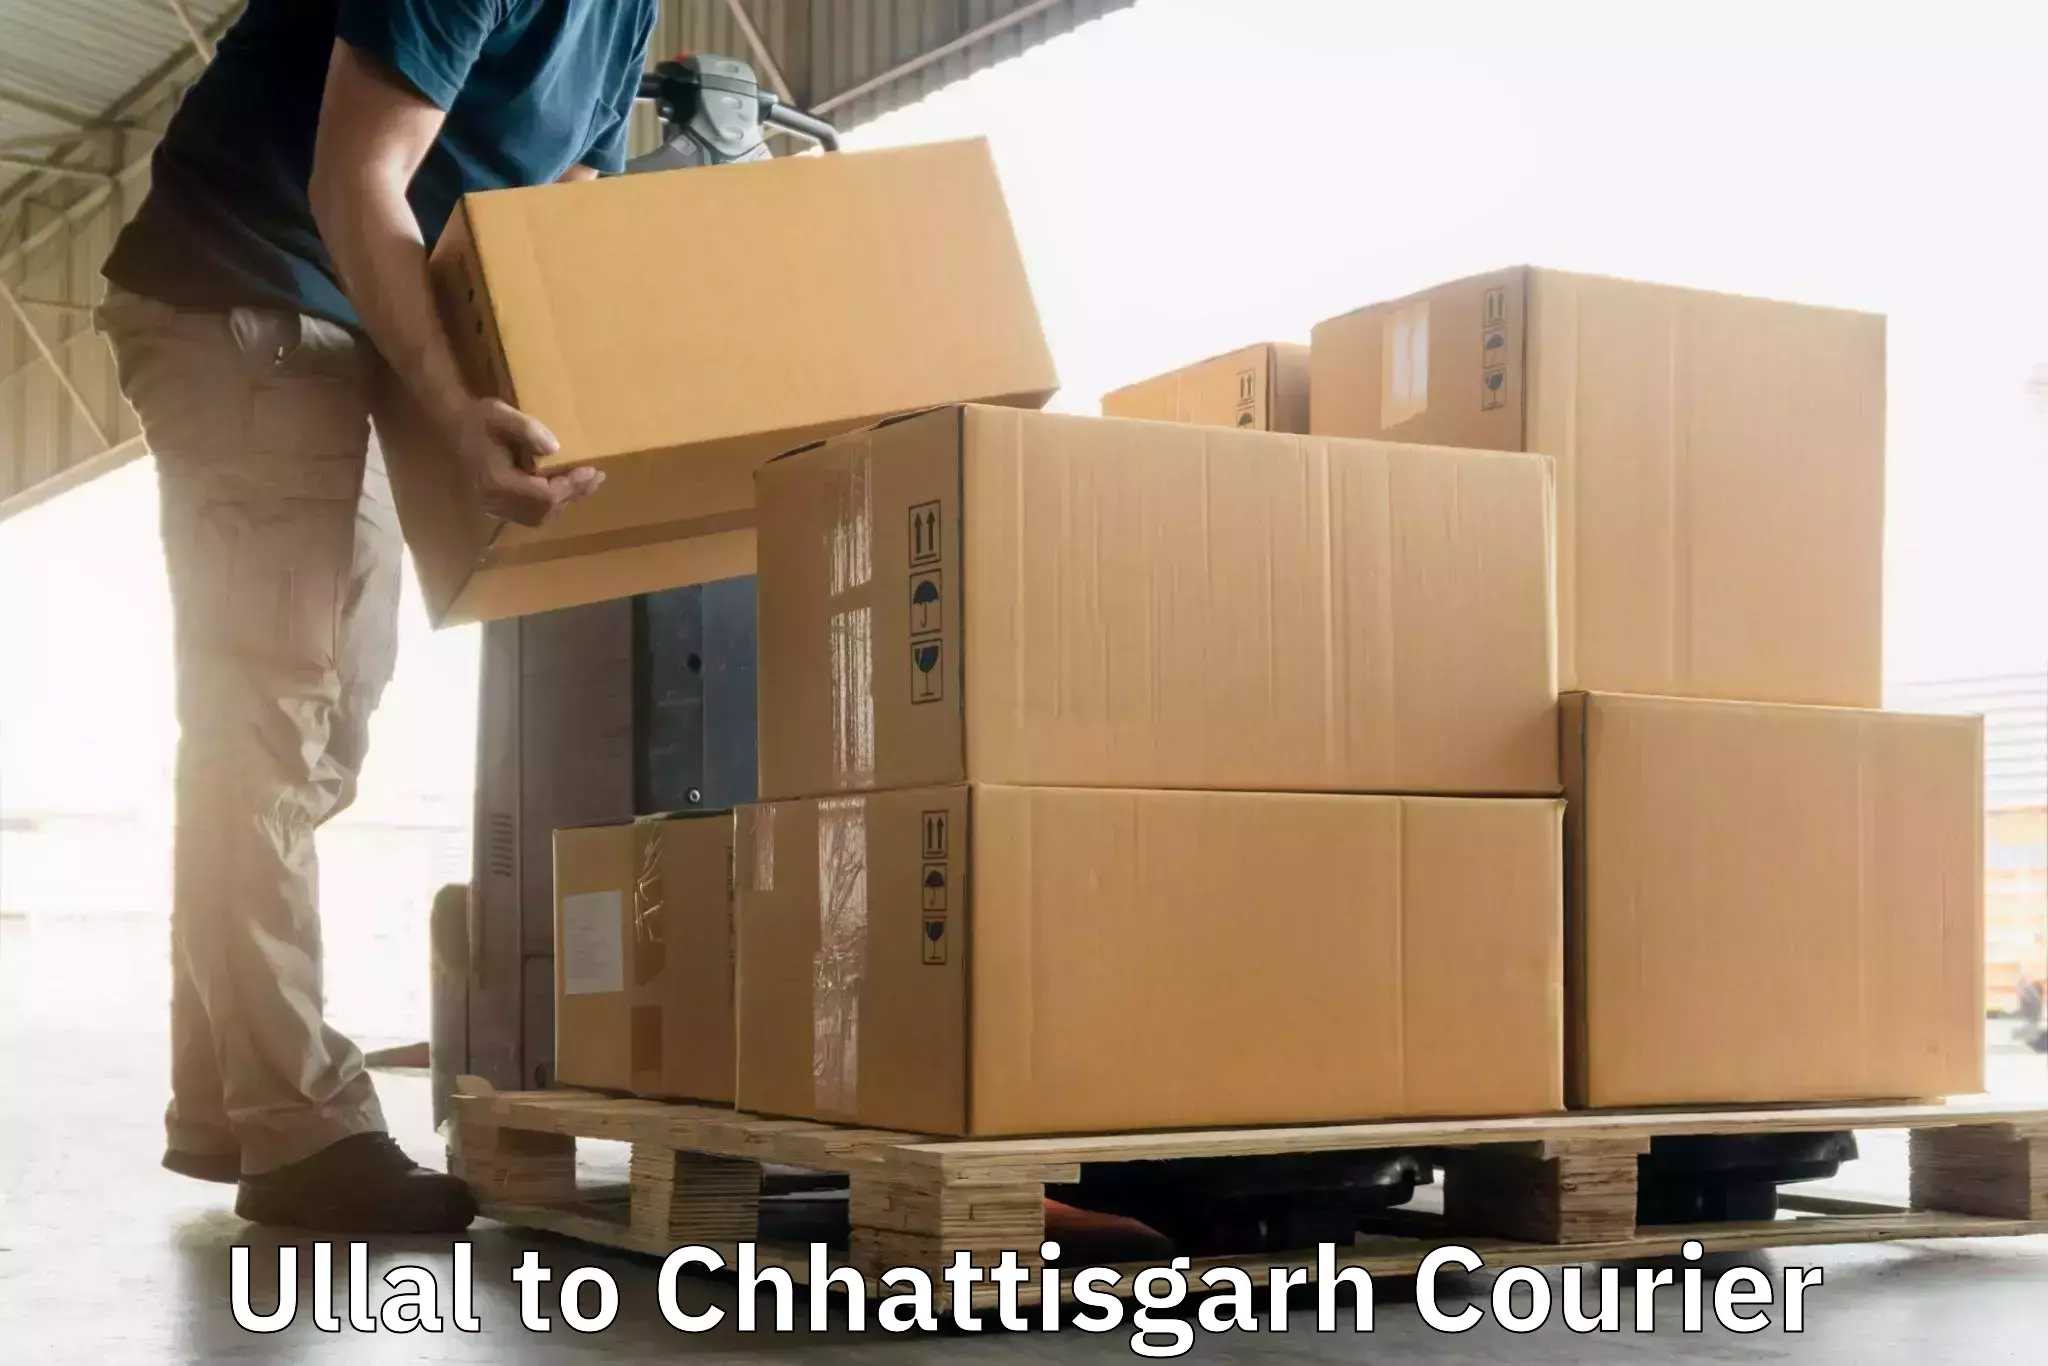 High-capacity parcel service Ullal to Kawardha